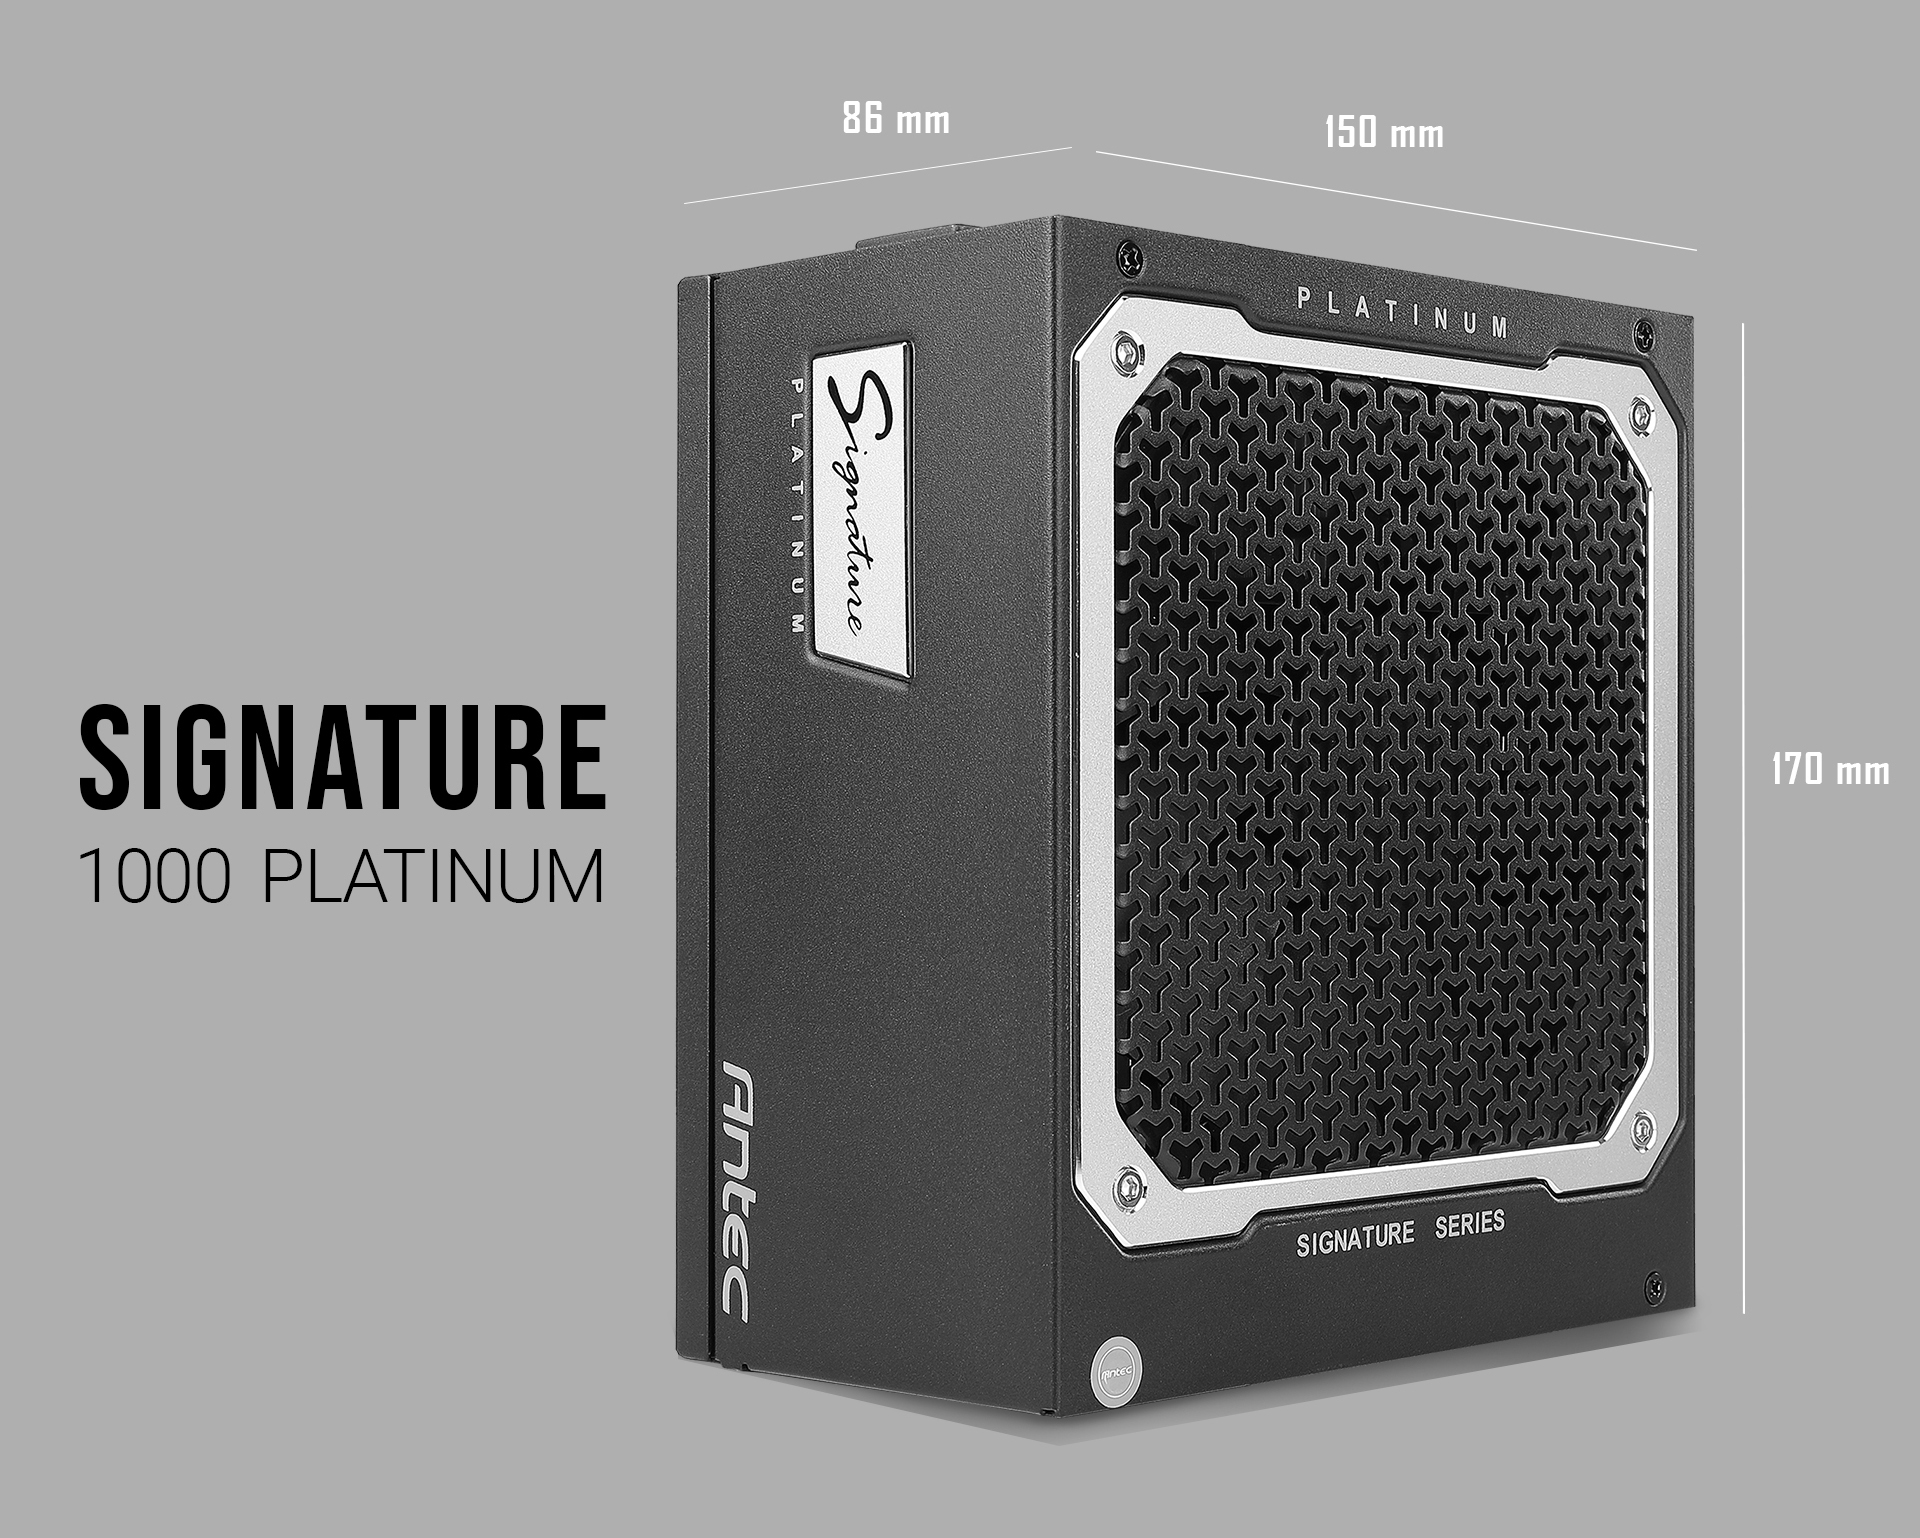 Antec Signature Series SP1000, 80 PLUS Platinum Certified, 1000W